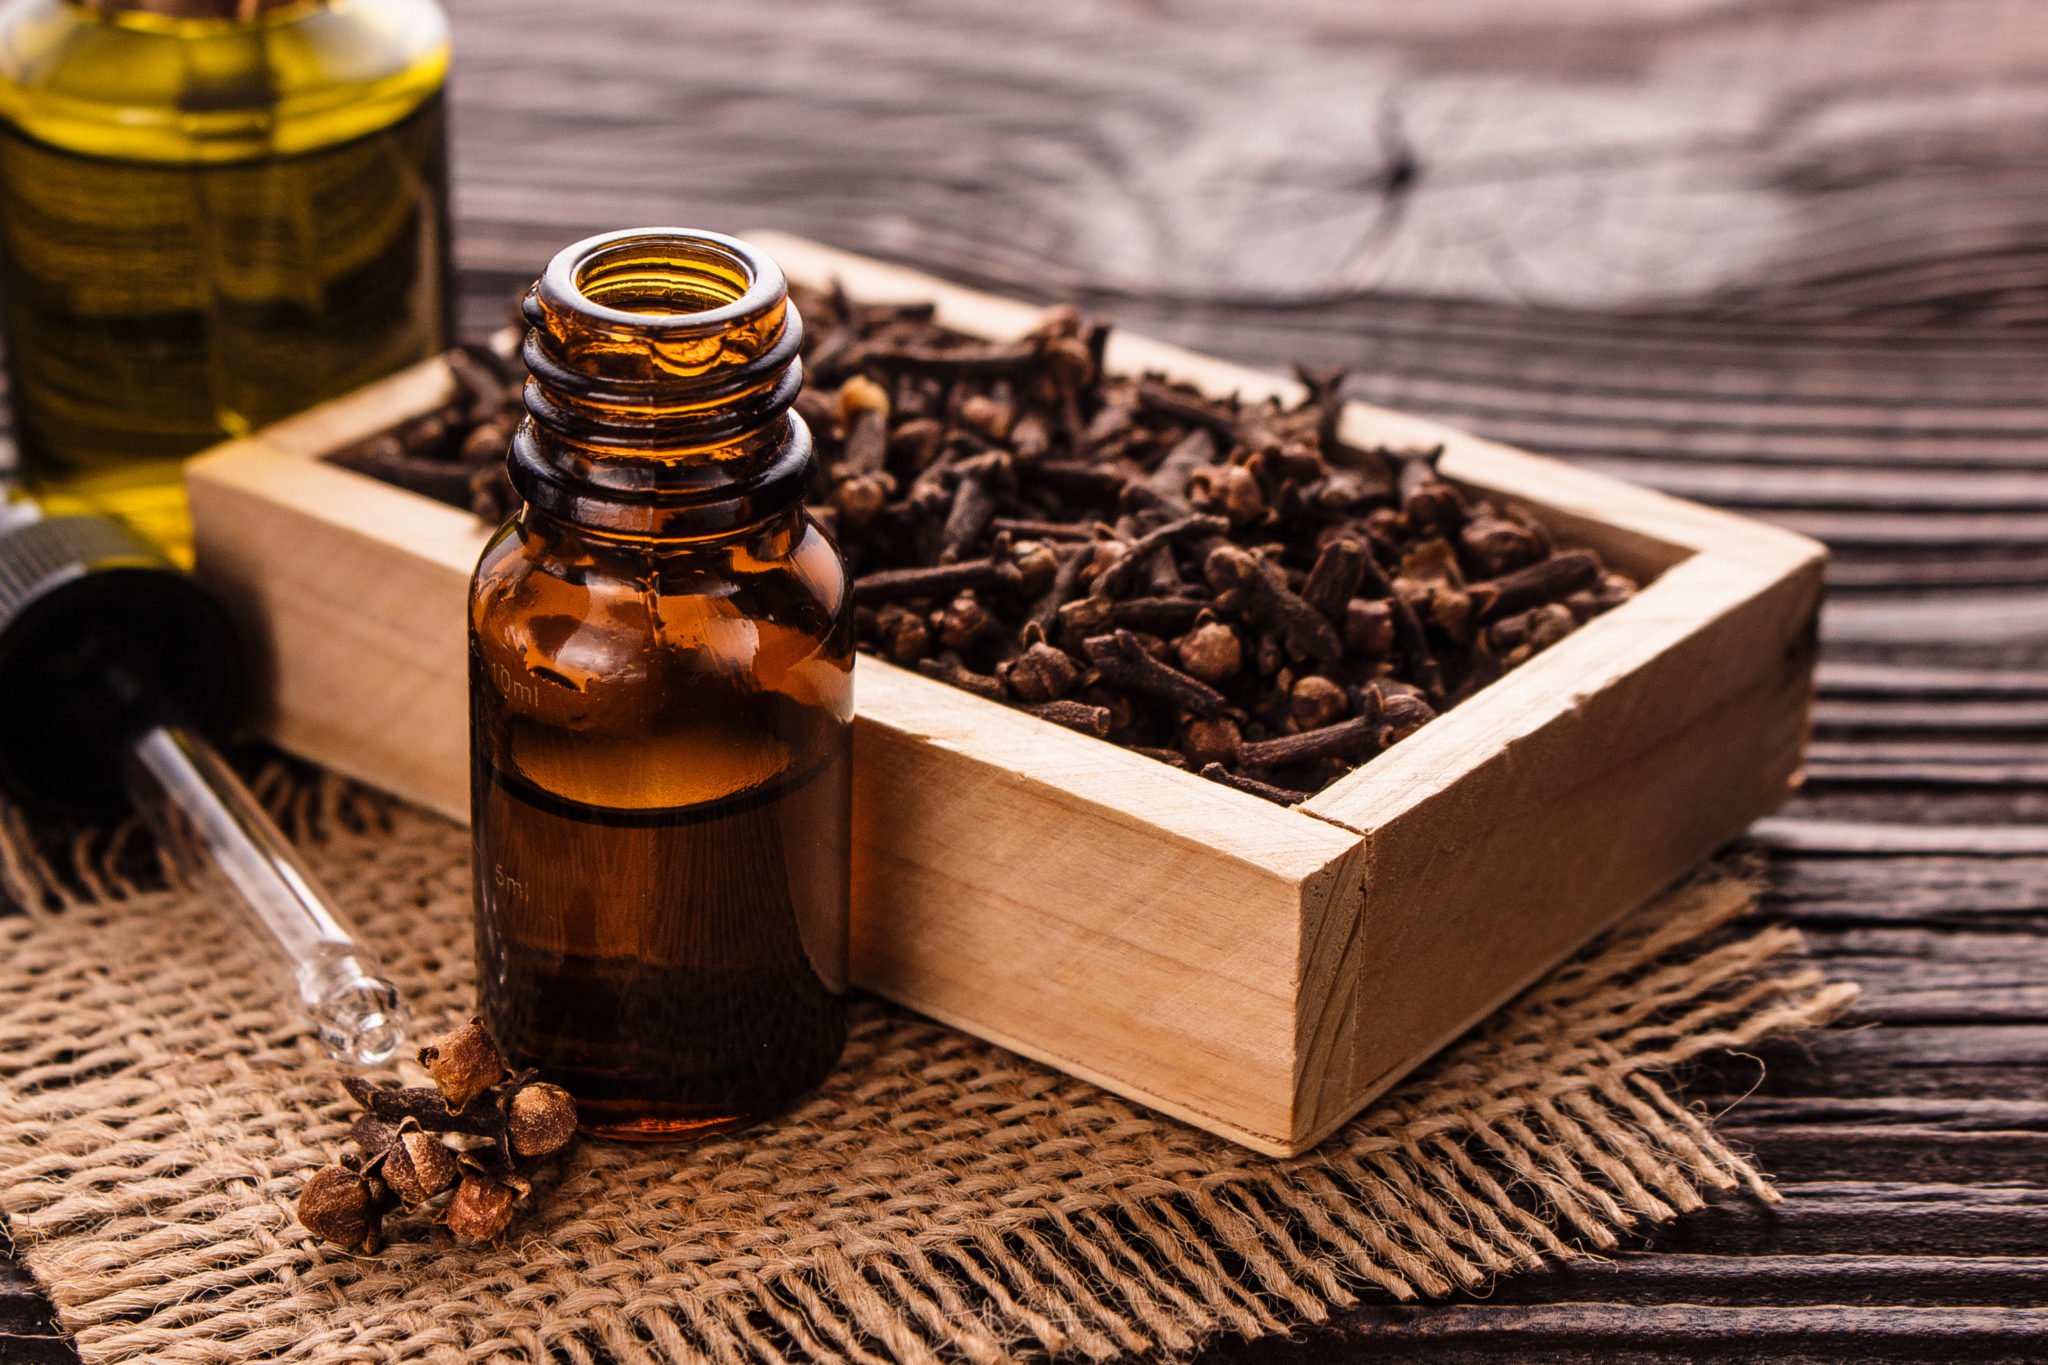 Óleo de cravo: 13 razões incríveis para usar esse óleo essencial super terapêutico